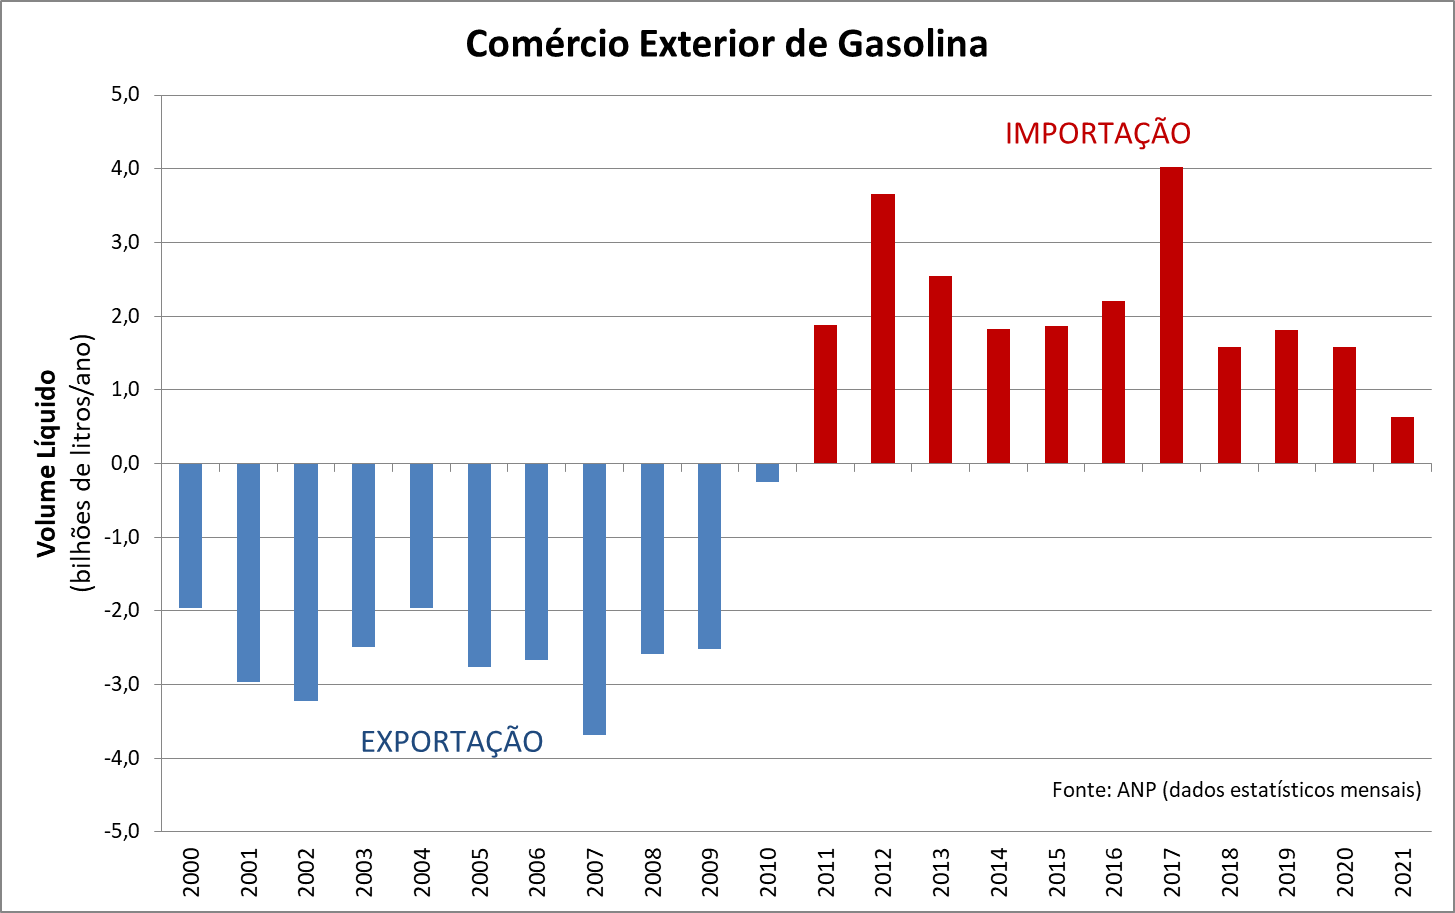 Comércio exterior de gasolina